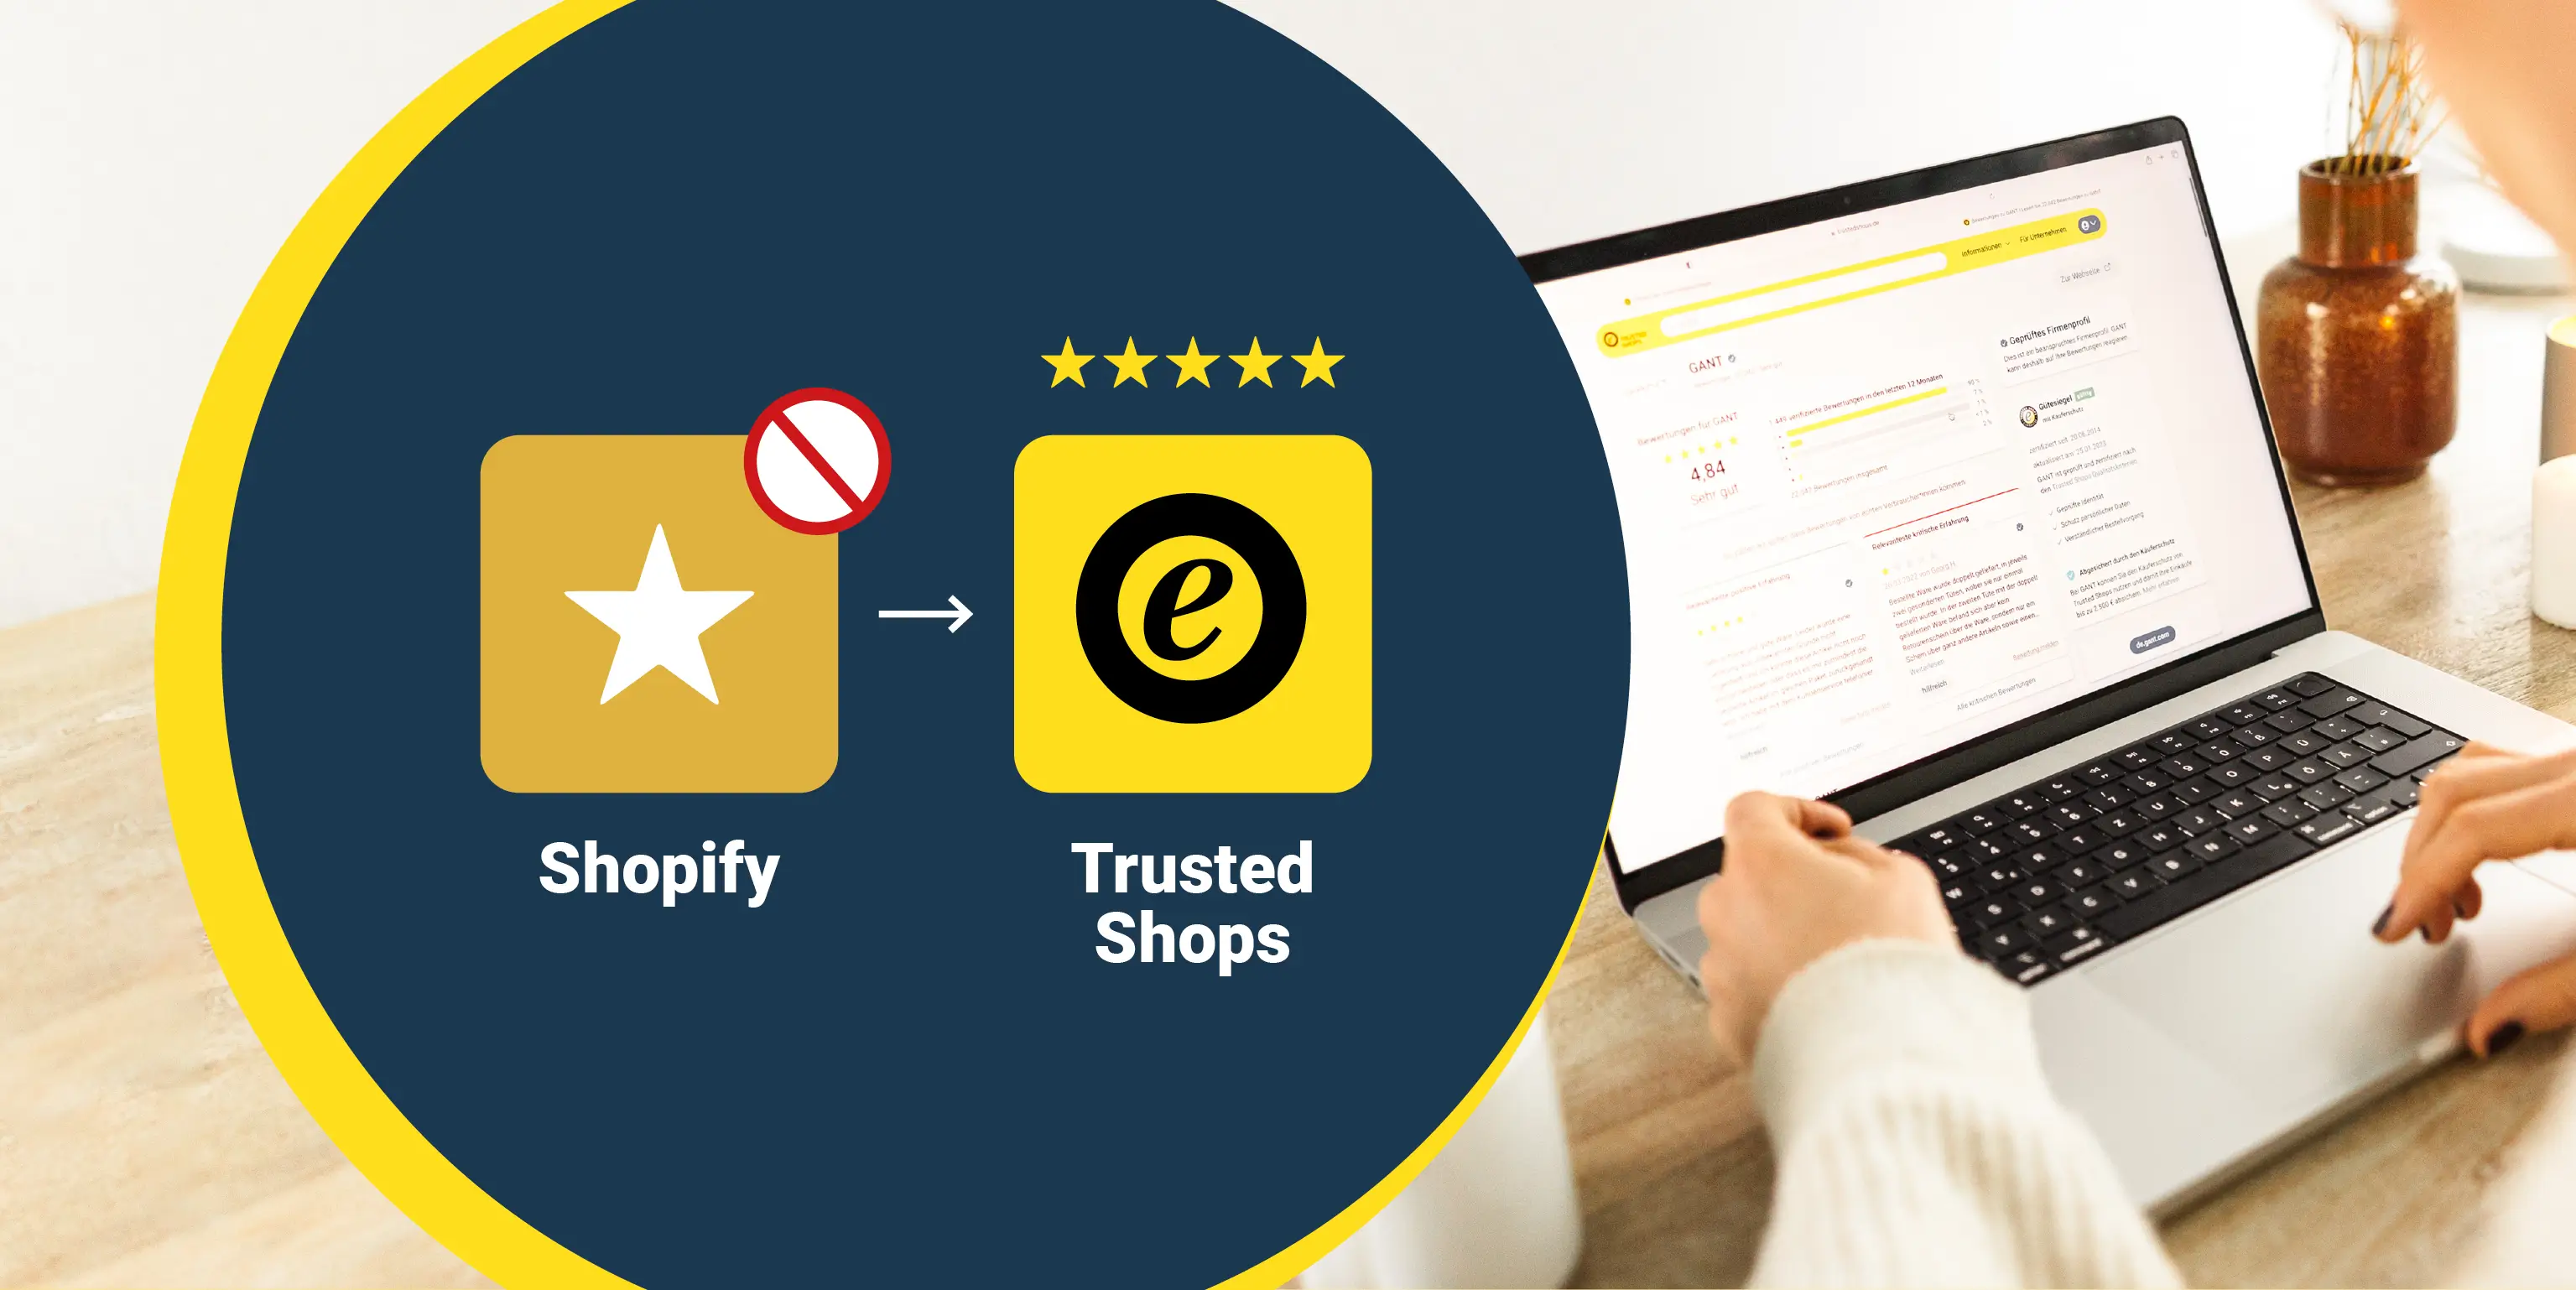 Bild zeigt Trusted Shops als Alternative zu Shopify Produktbewertungen.